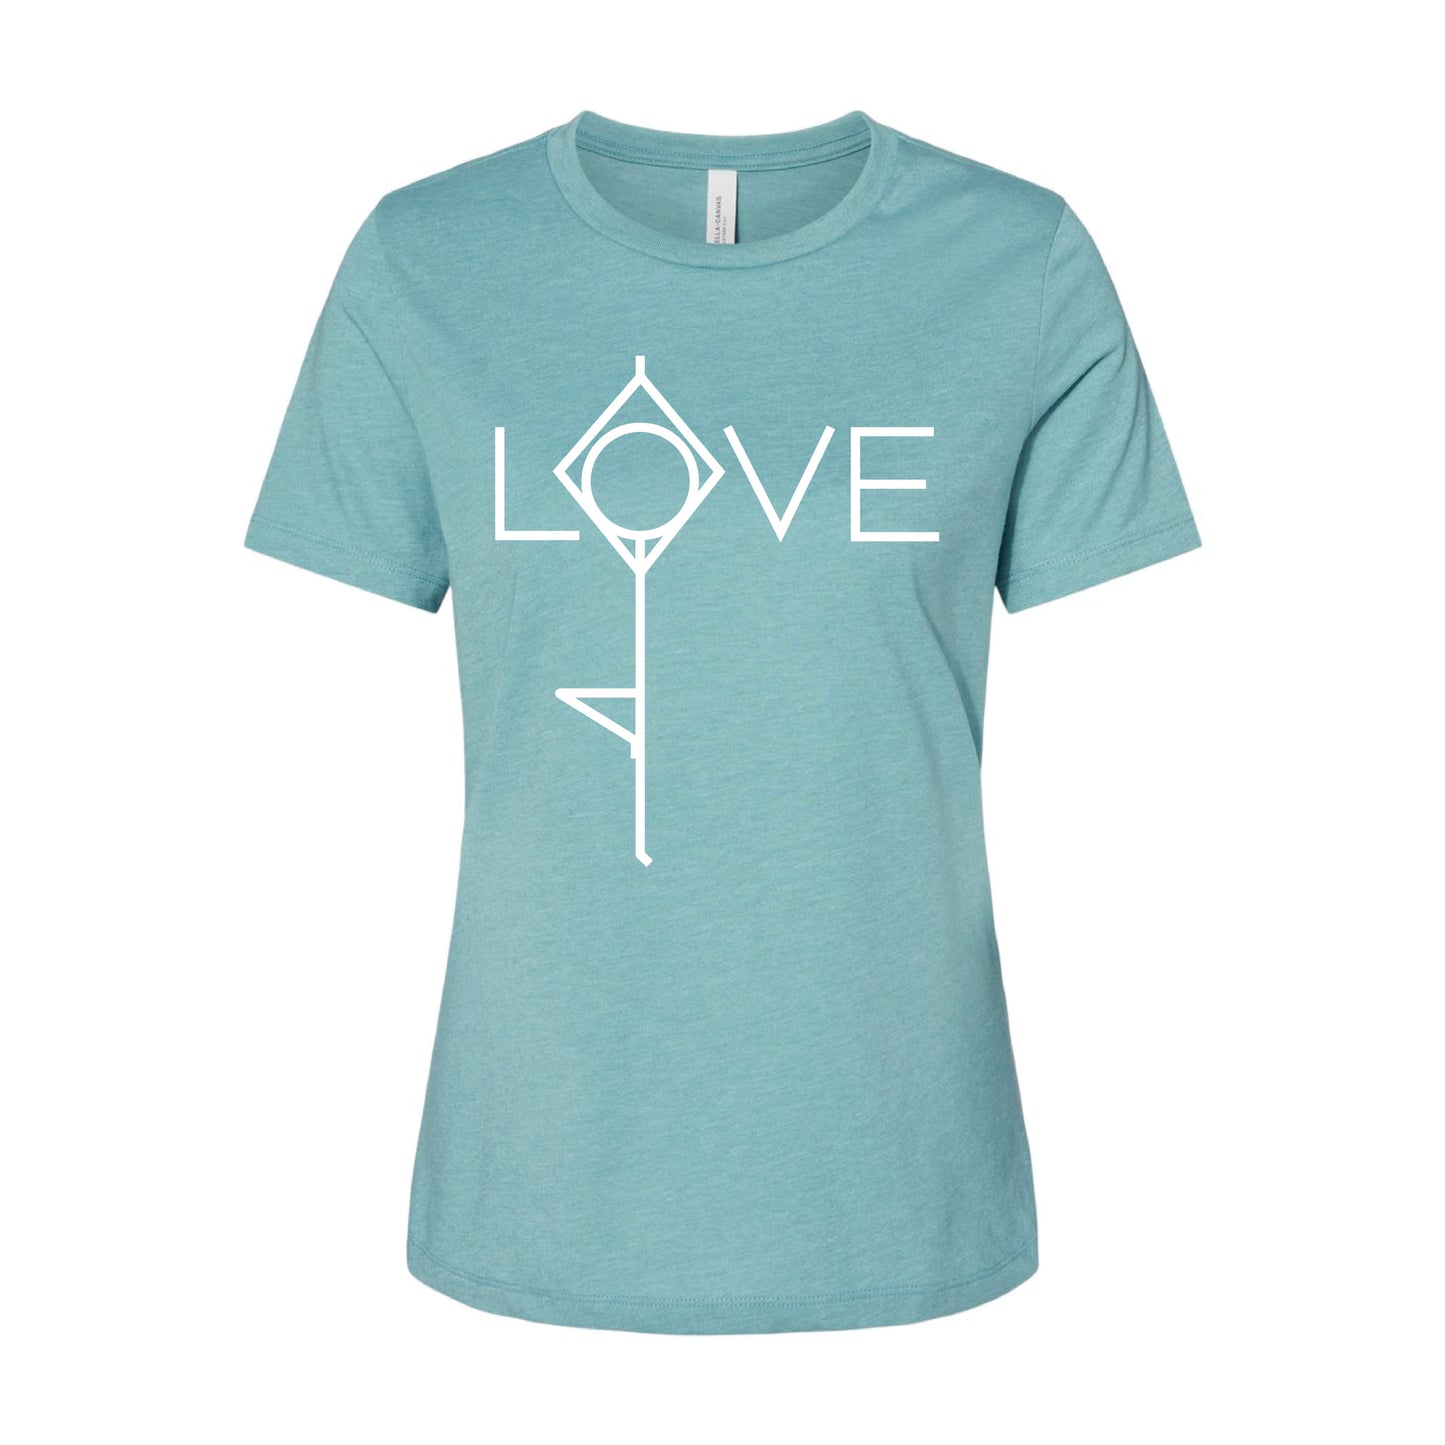 Yoga Women's T-shirt